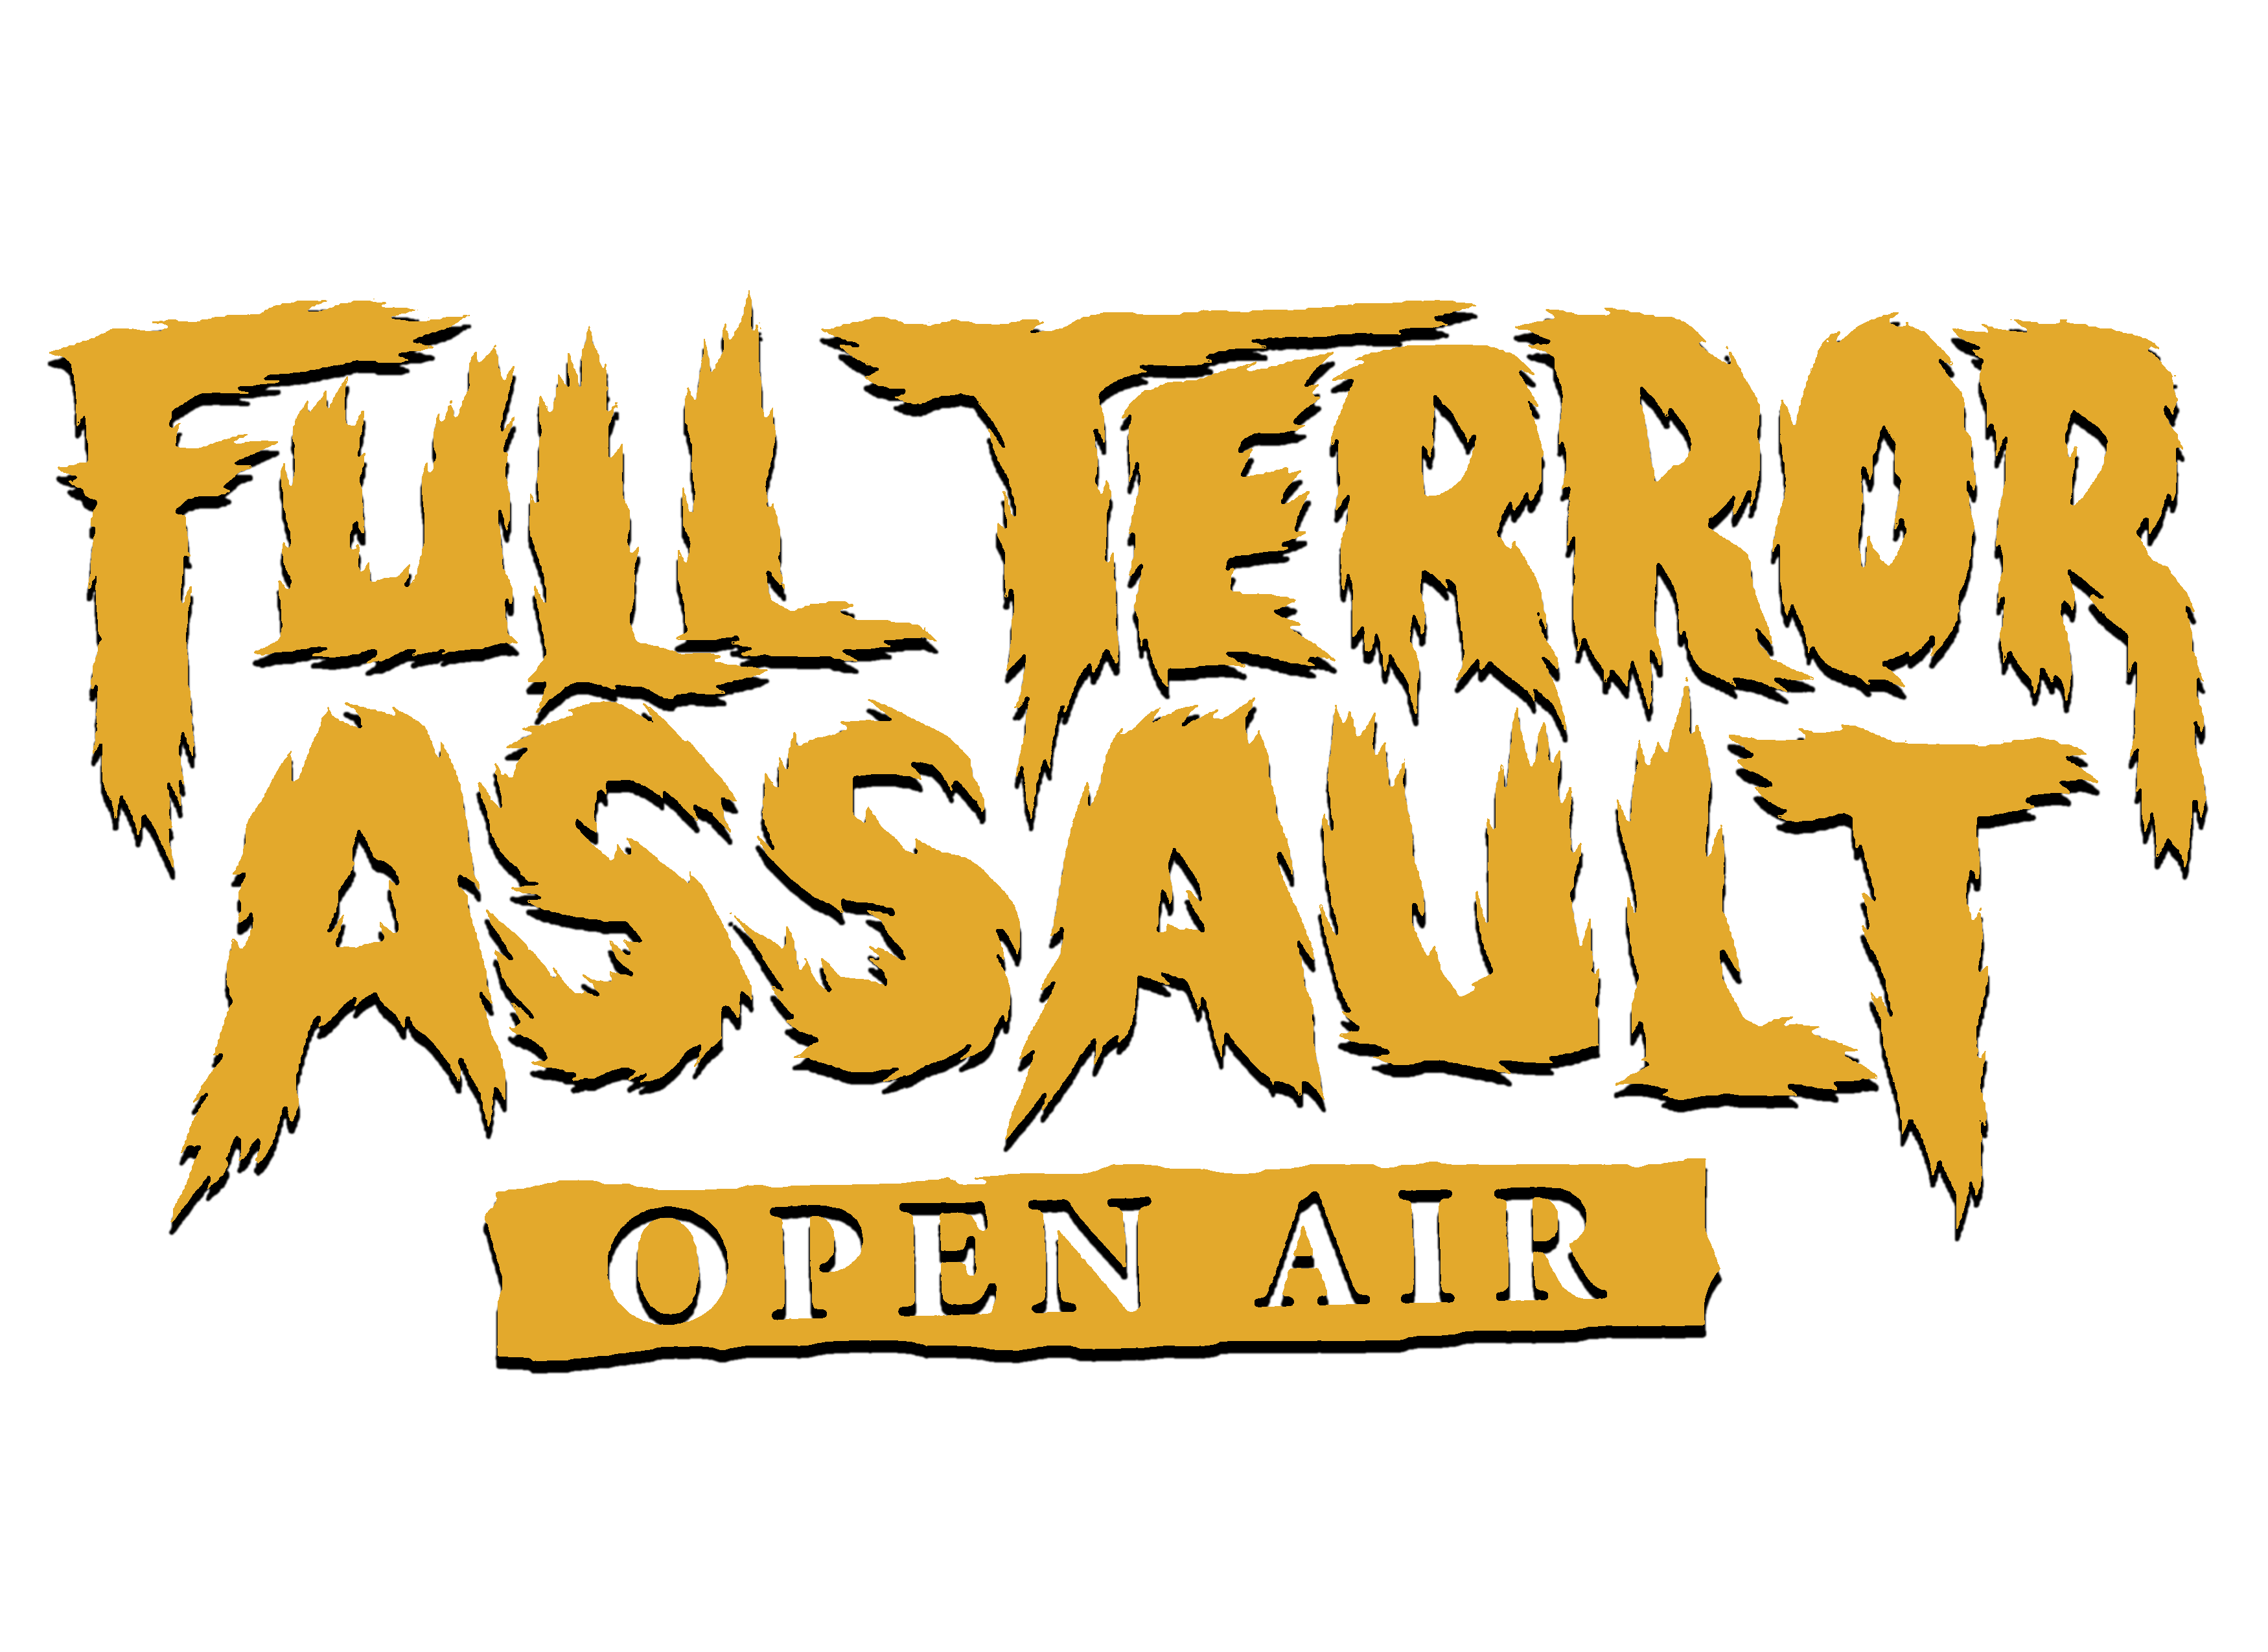 Full Terror Assault